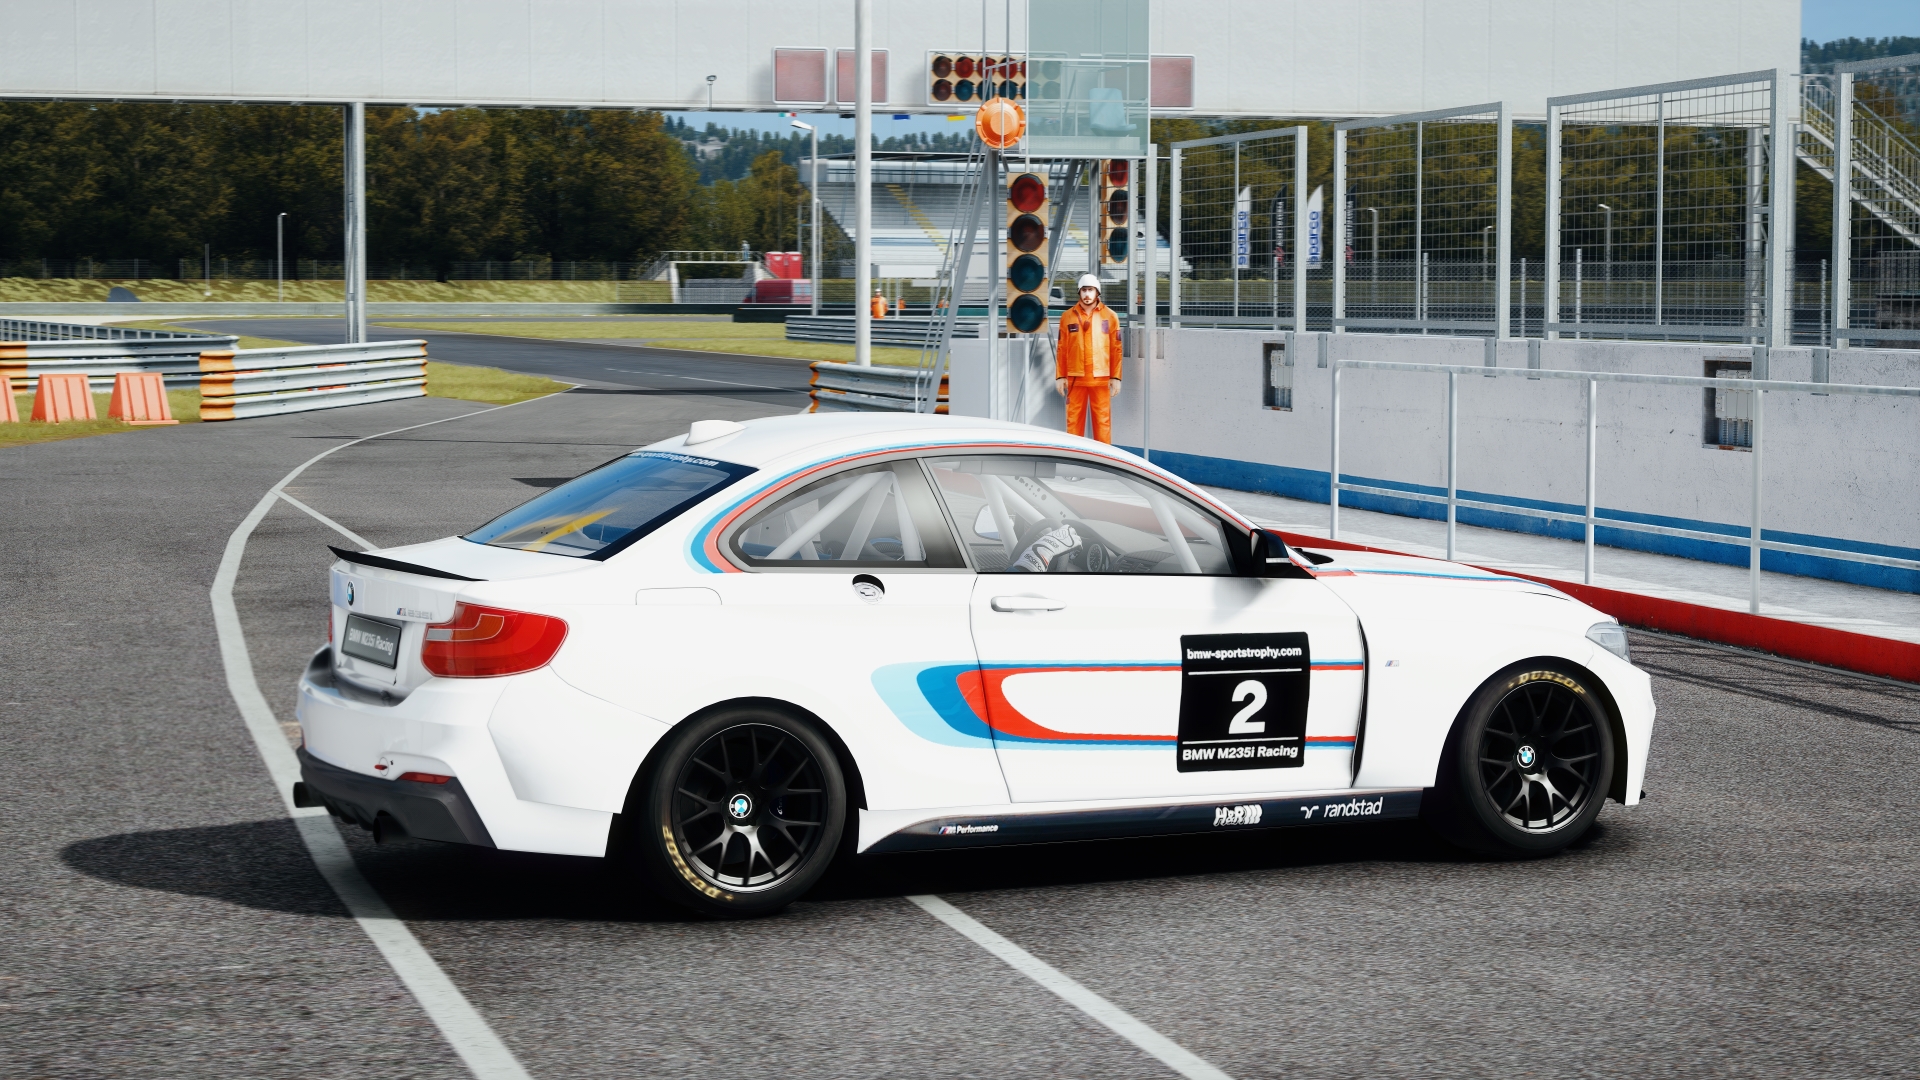 20200717-235819-Magione-BMW M235i Racing.jpg